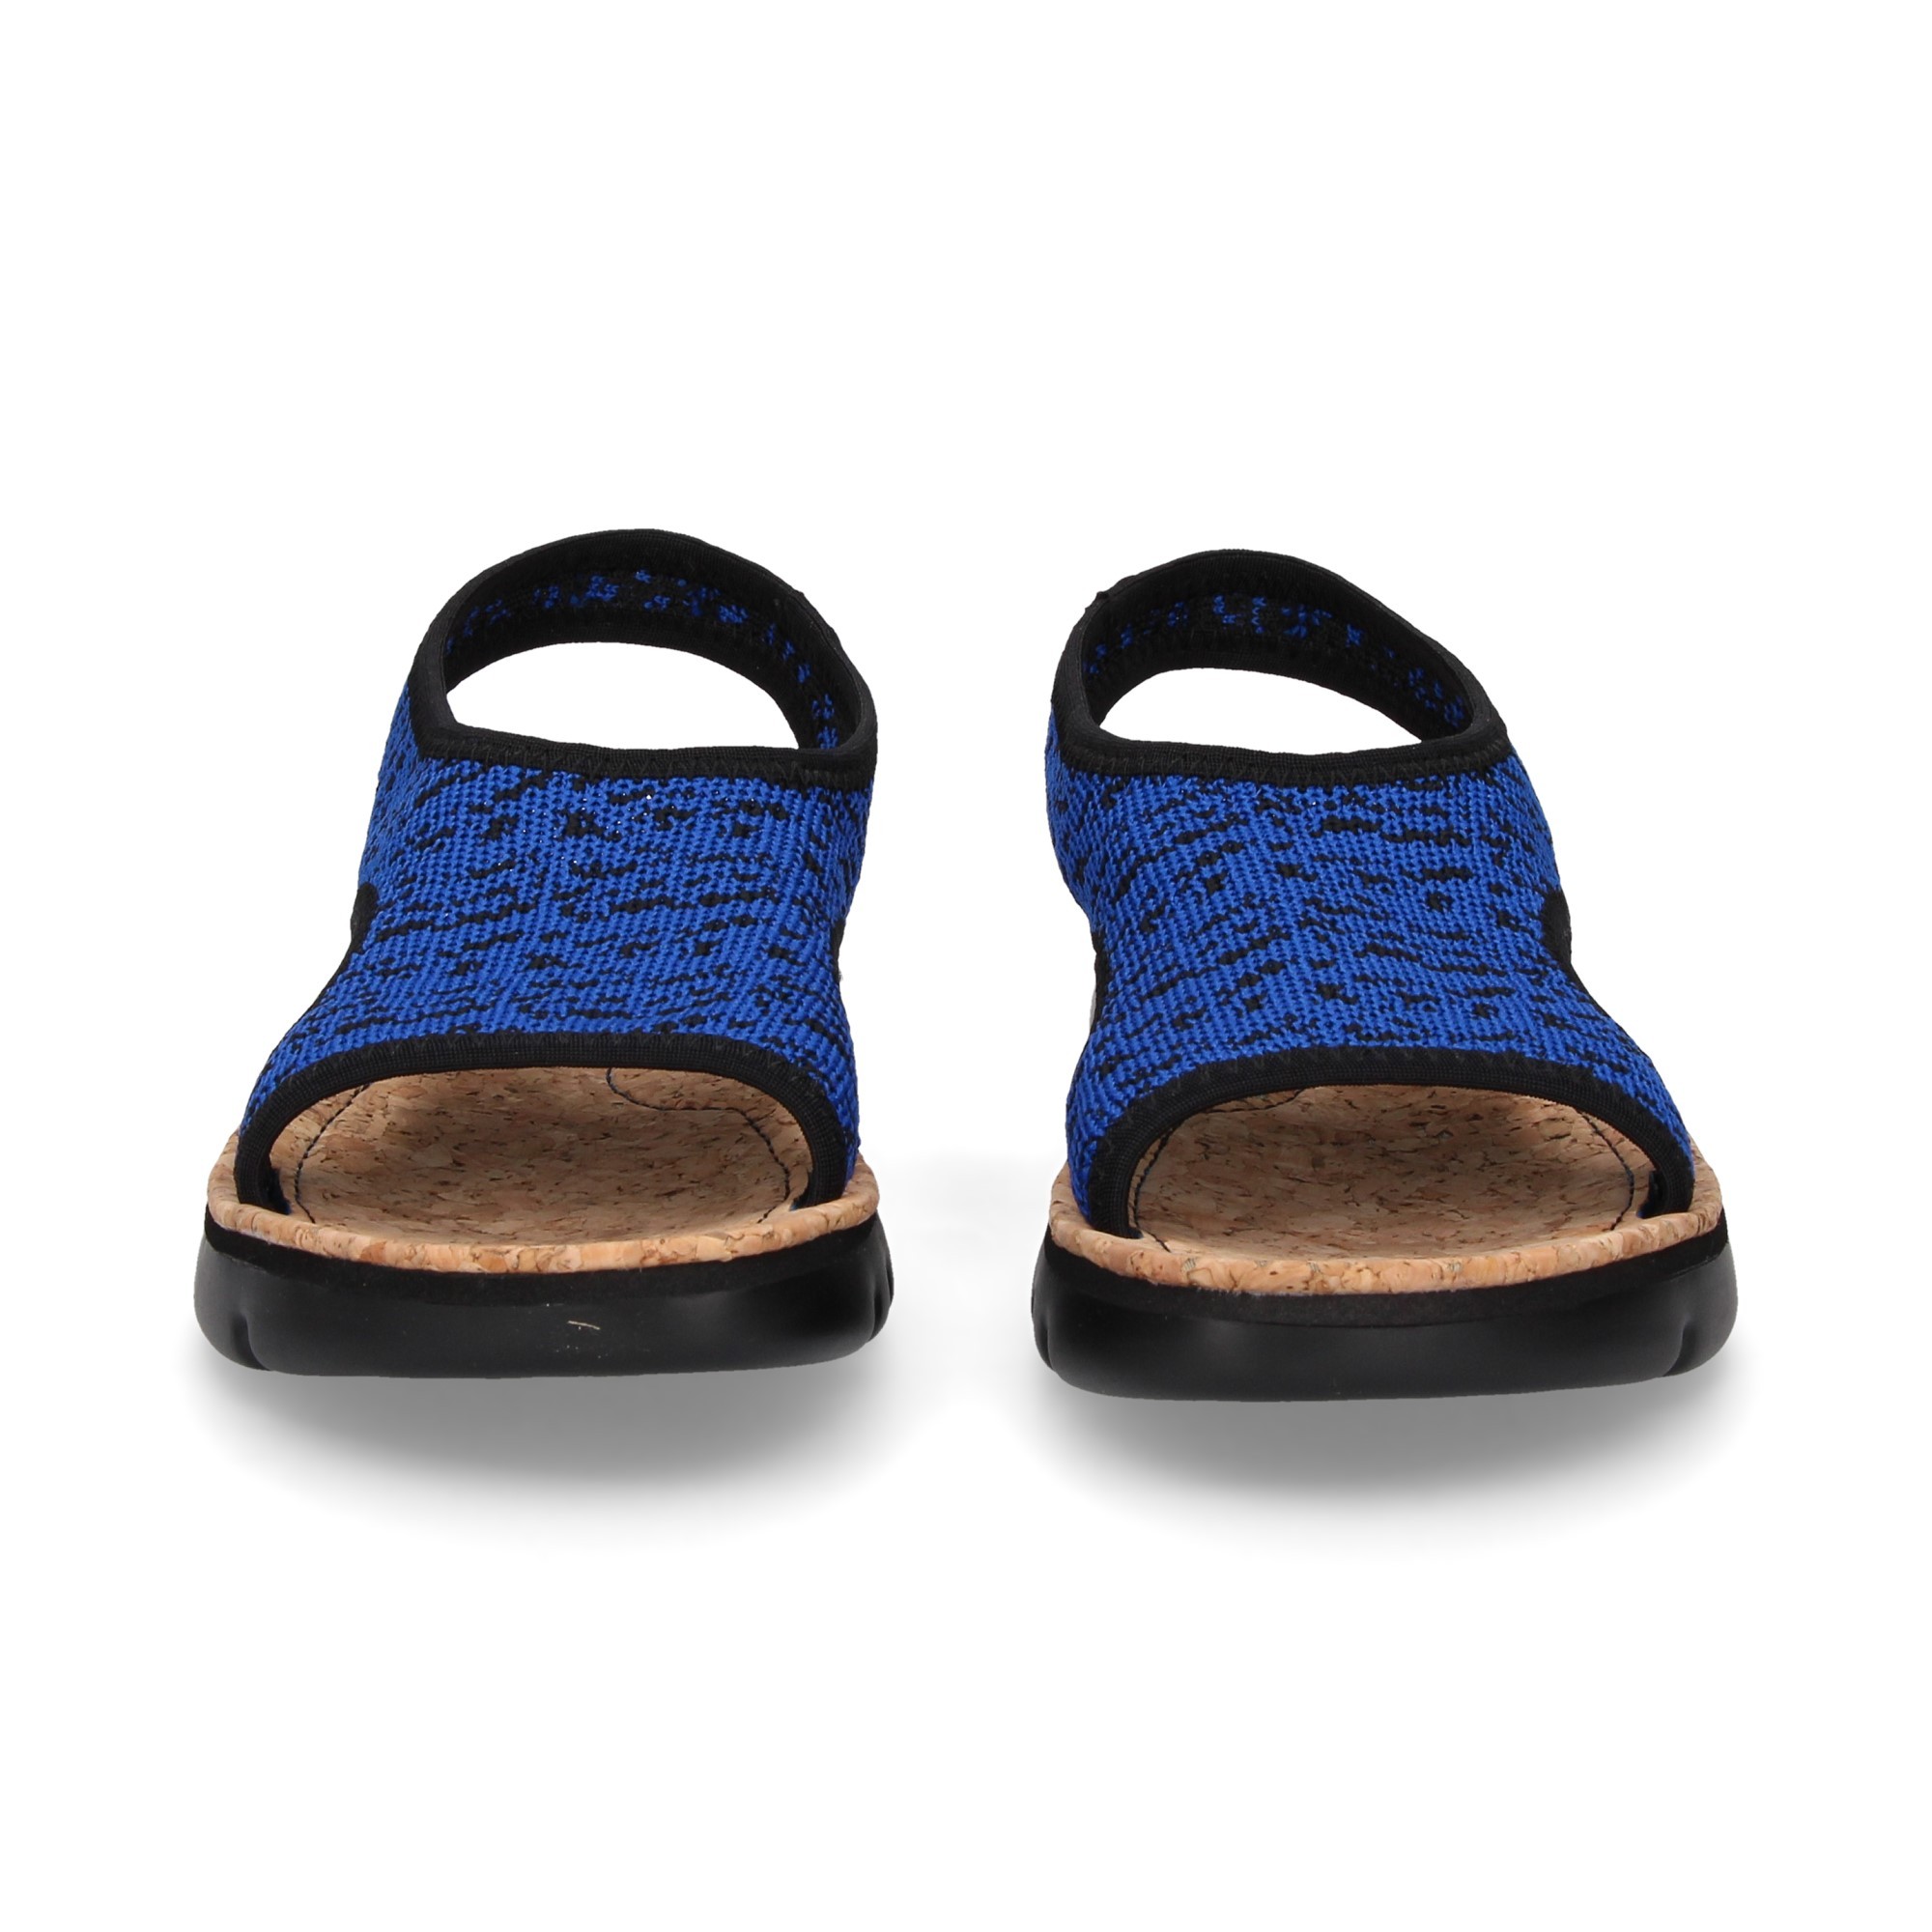 sandalia-textil-azulon